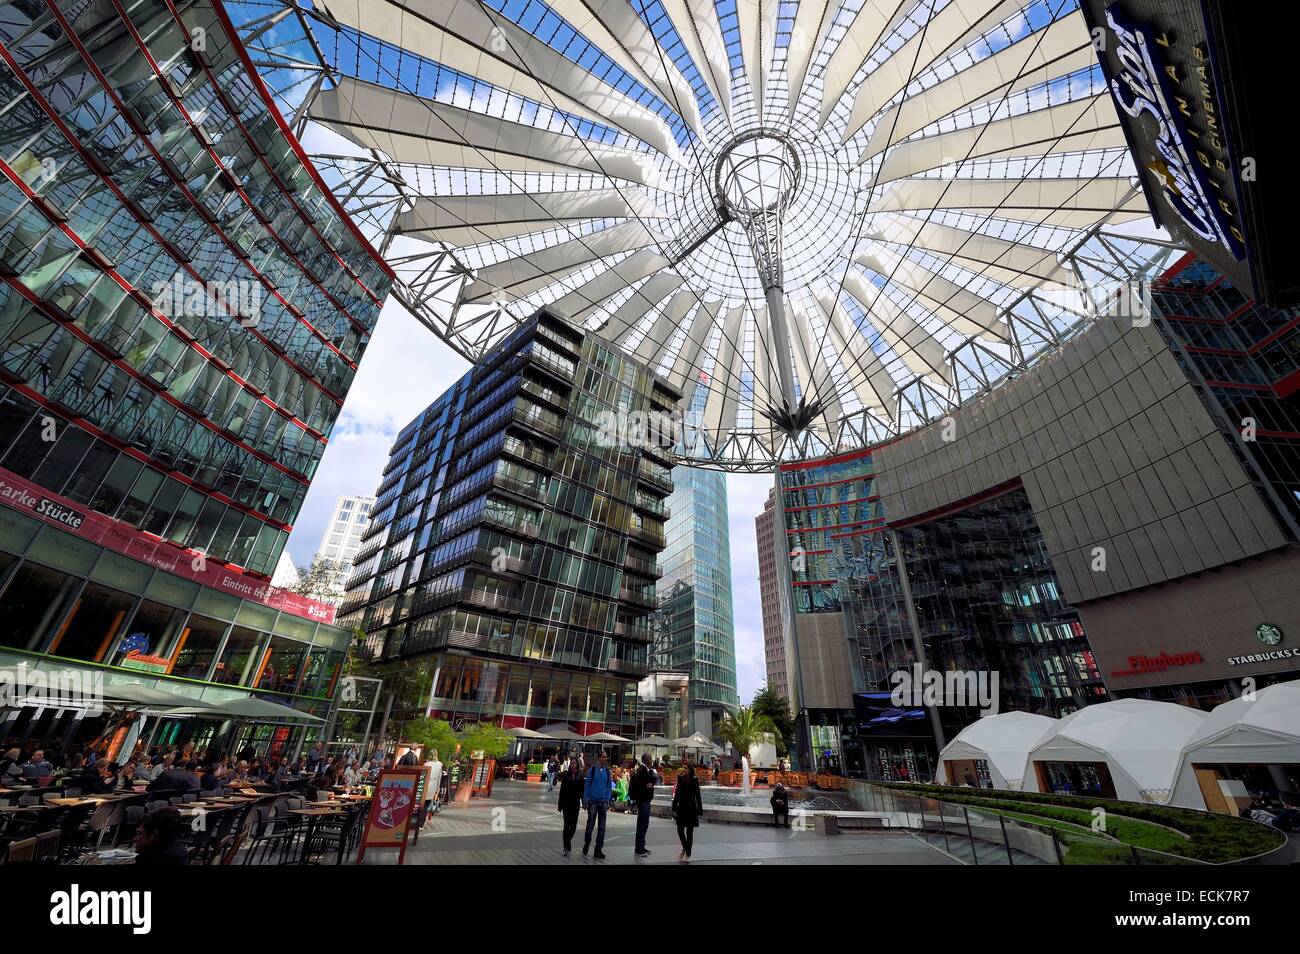 Germania, Berlino, Potsdamer Platz, la cupola di vetro del Sony Center dall'architetto Helmut Jahn Foto Stock